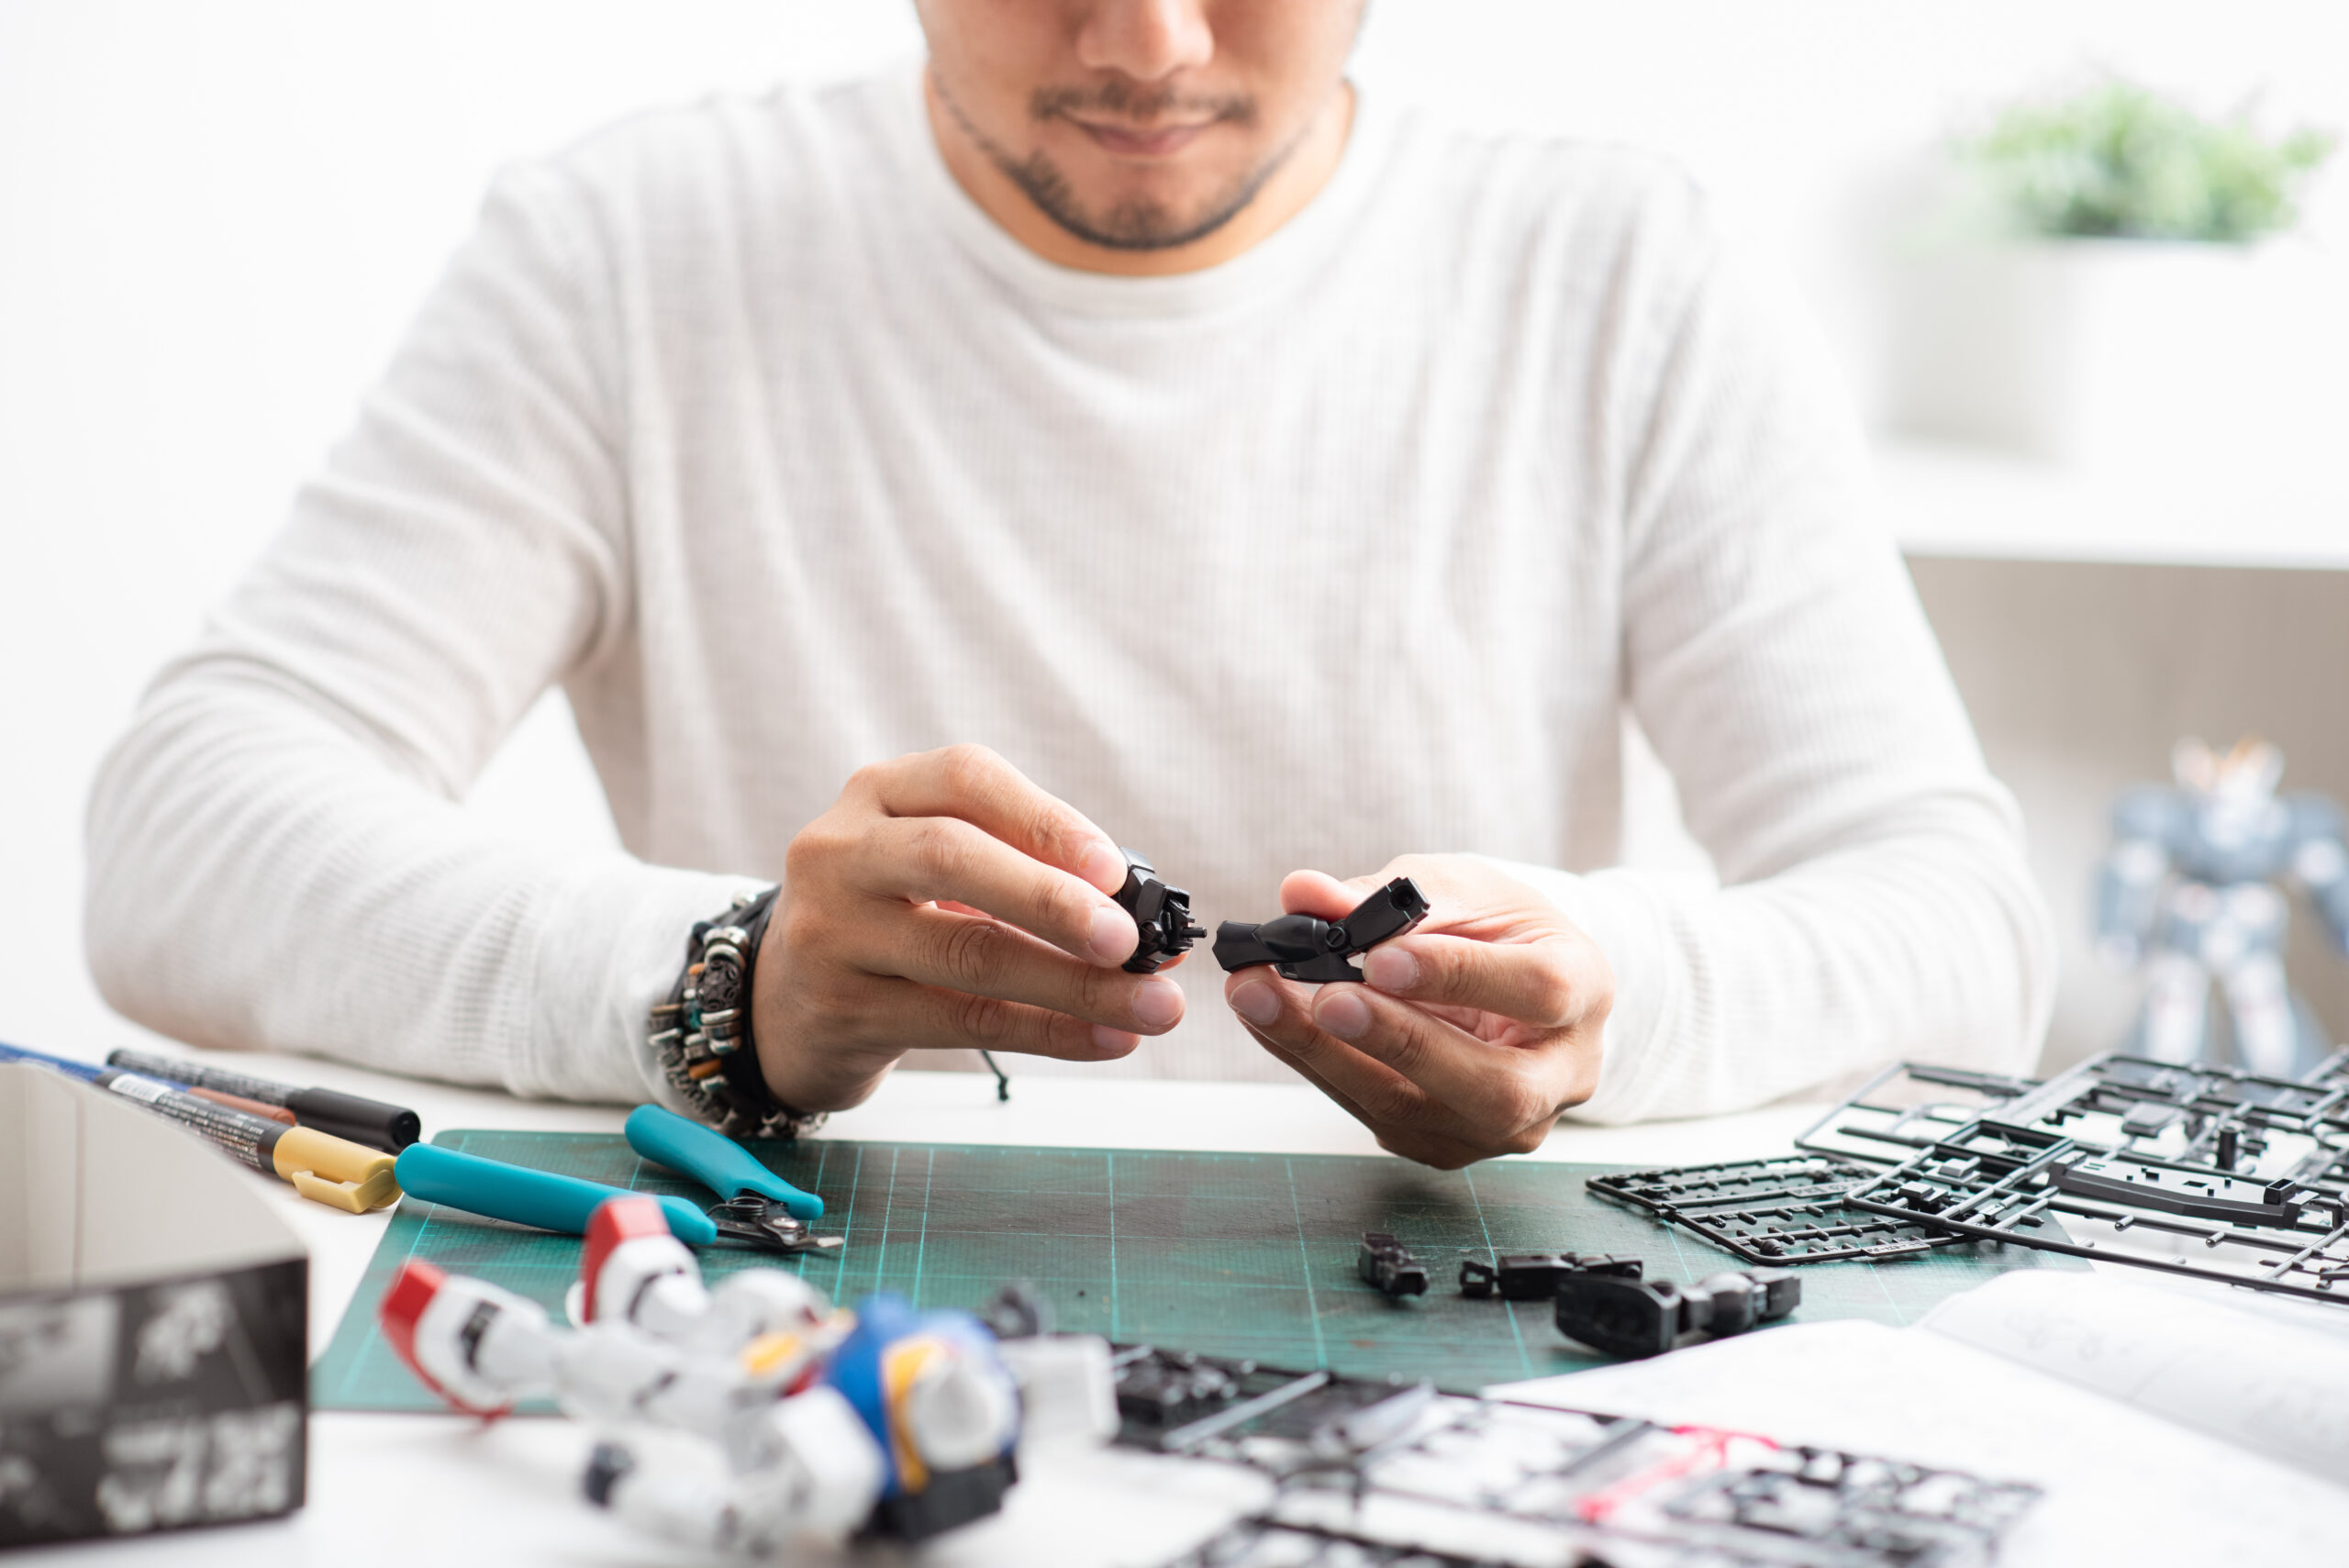 Man assembling plastic anime models